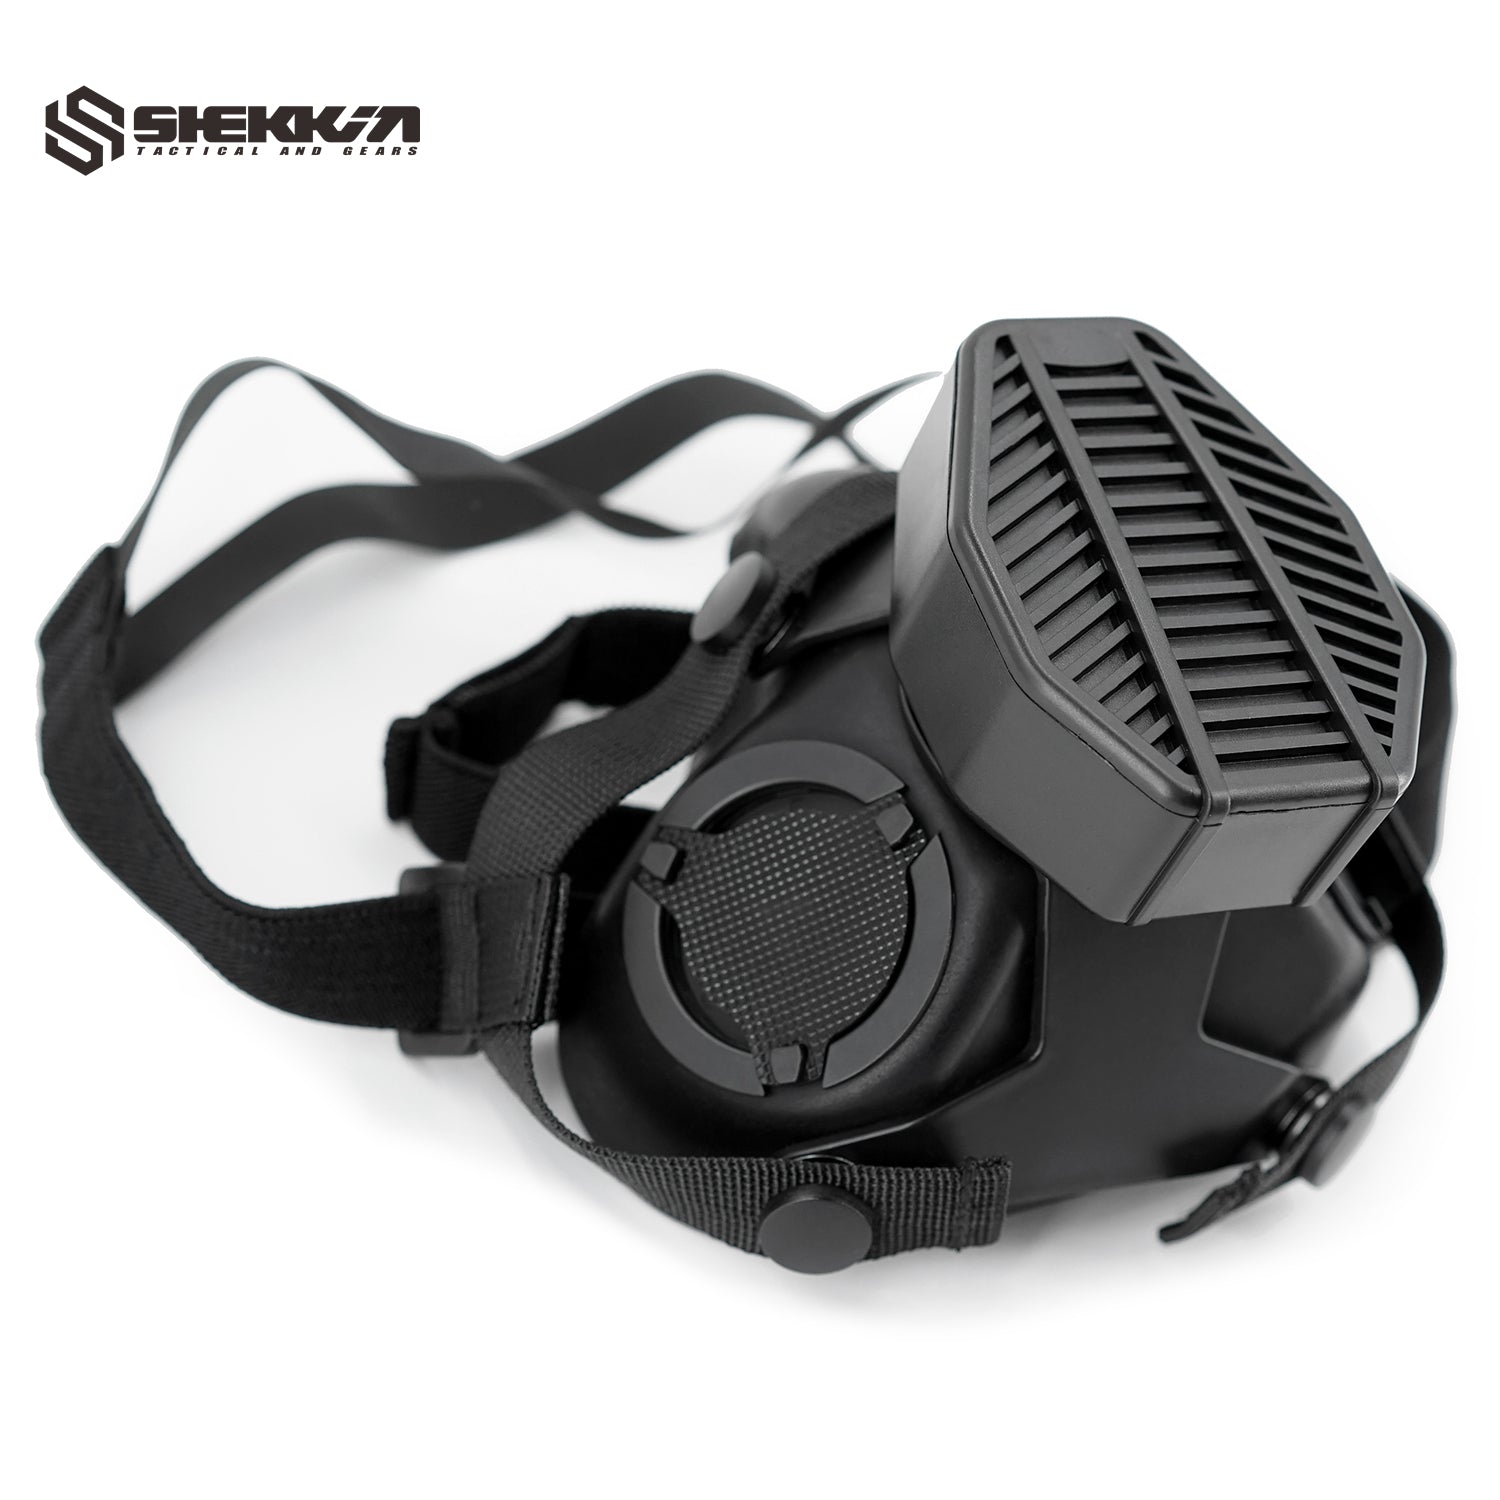 Ops-Core style SOTR mask - Shekkin Gears